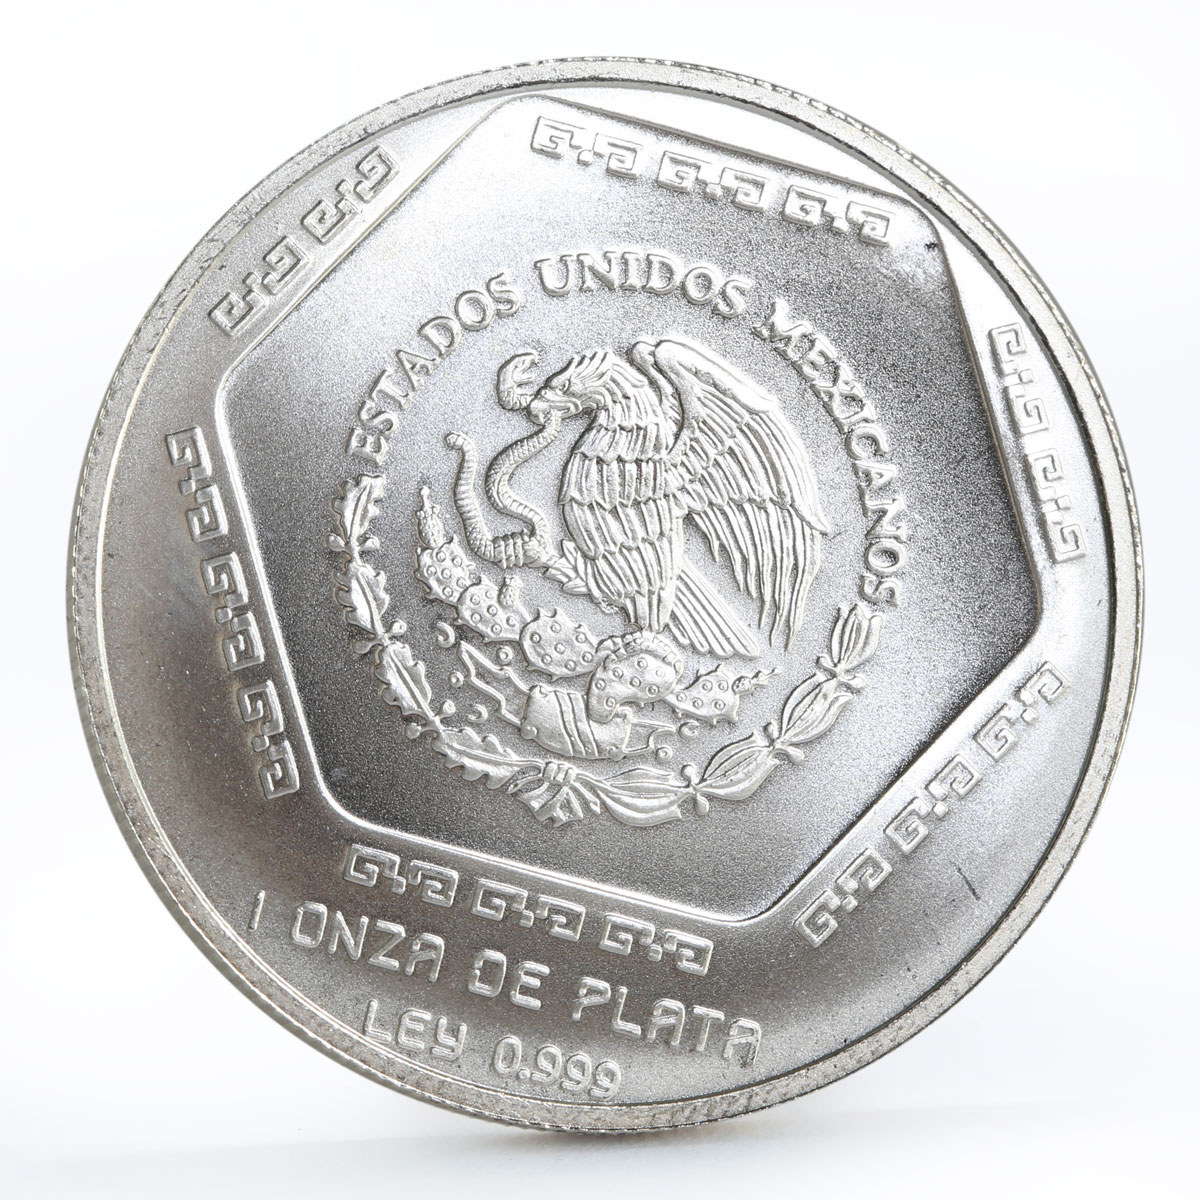 Mexico 5 pesos Precolombina series Lapida Tumba de Palenque silver coin 1994